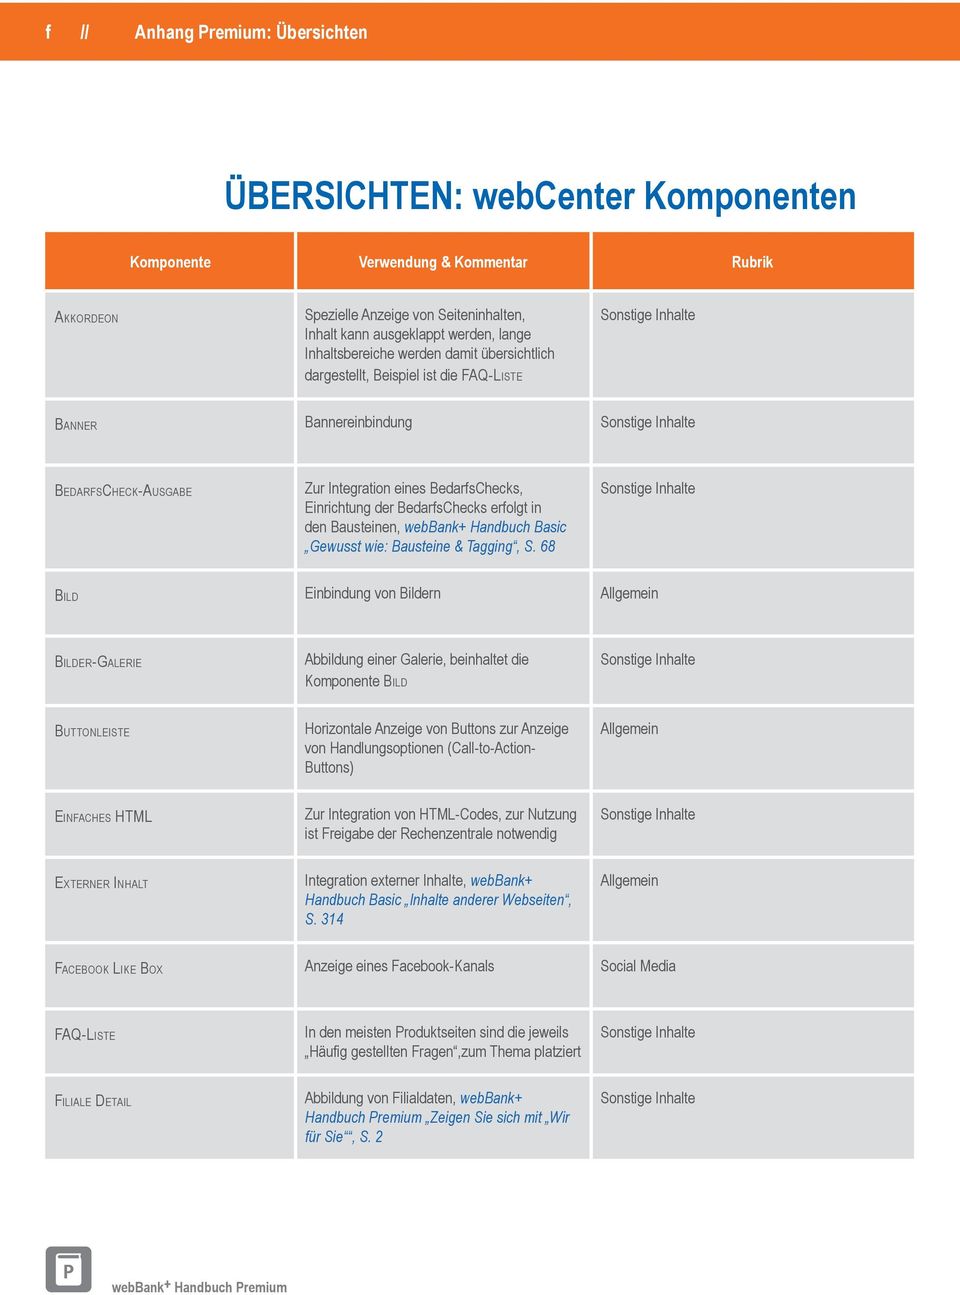 erfolgt in den Bausteinen, webbank+ Handbuch Basic Gewusst wie: Bausteine & Tagging, S.